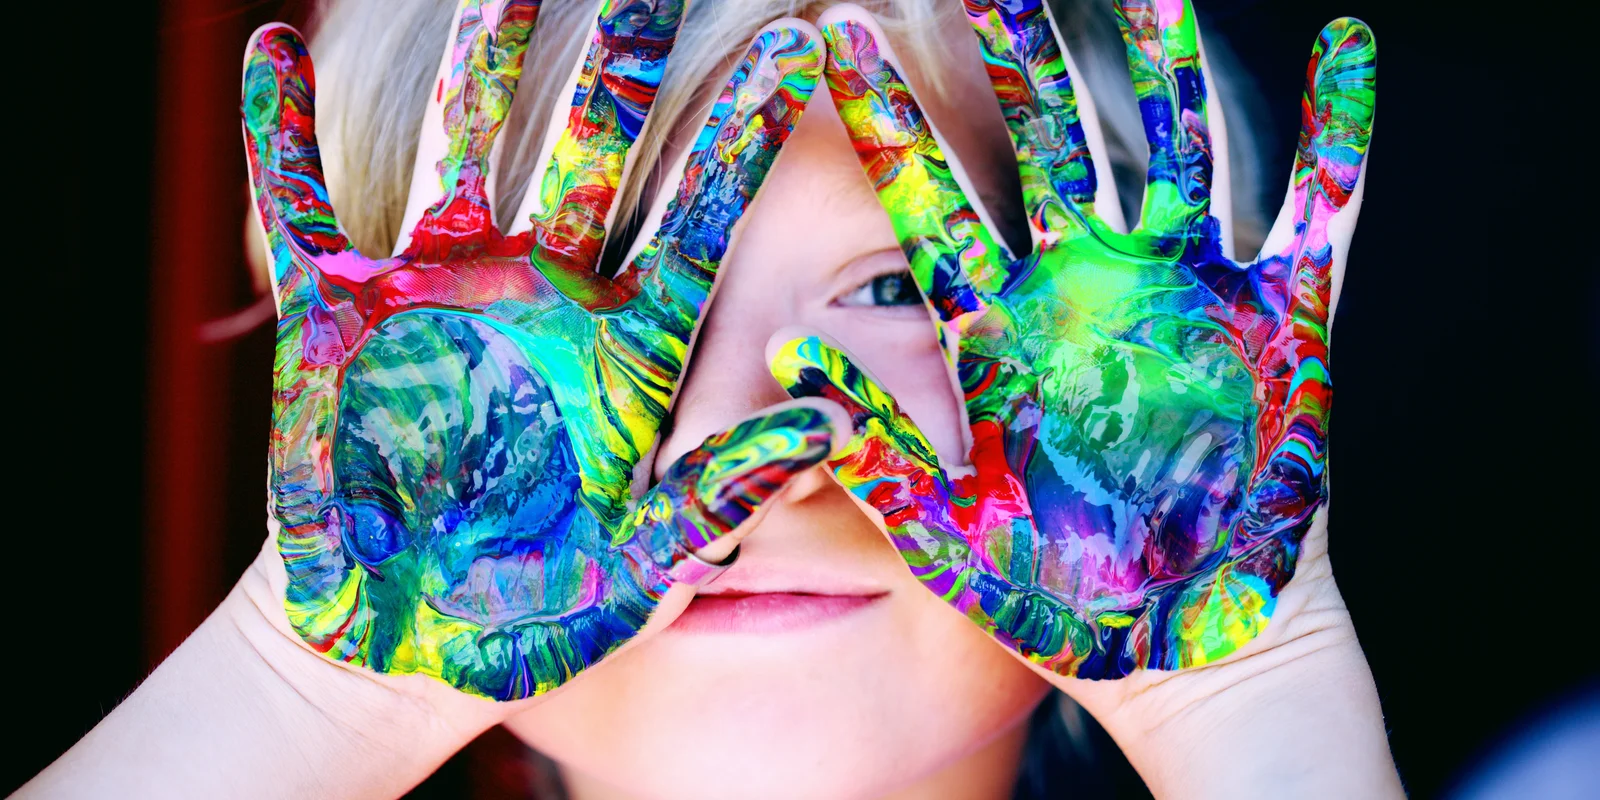 Ein Kind hält sich mit bunter Farbe bemalte Hände vor sein Gesicht und blickt hindurch.